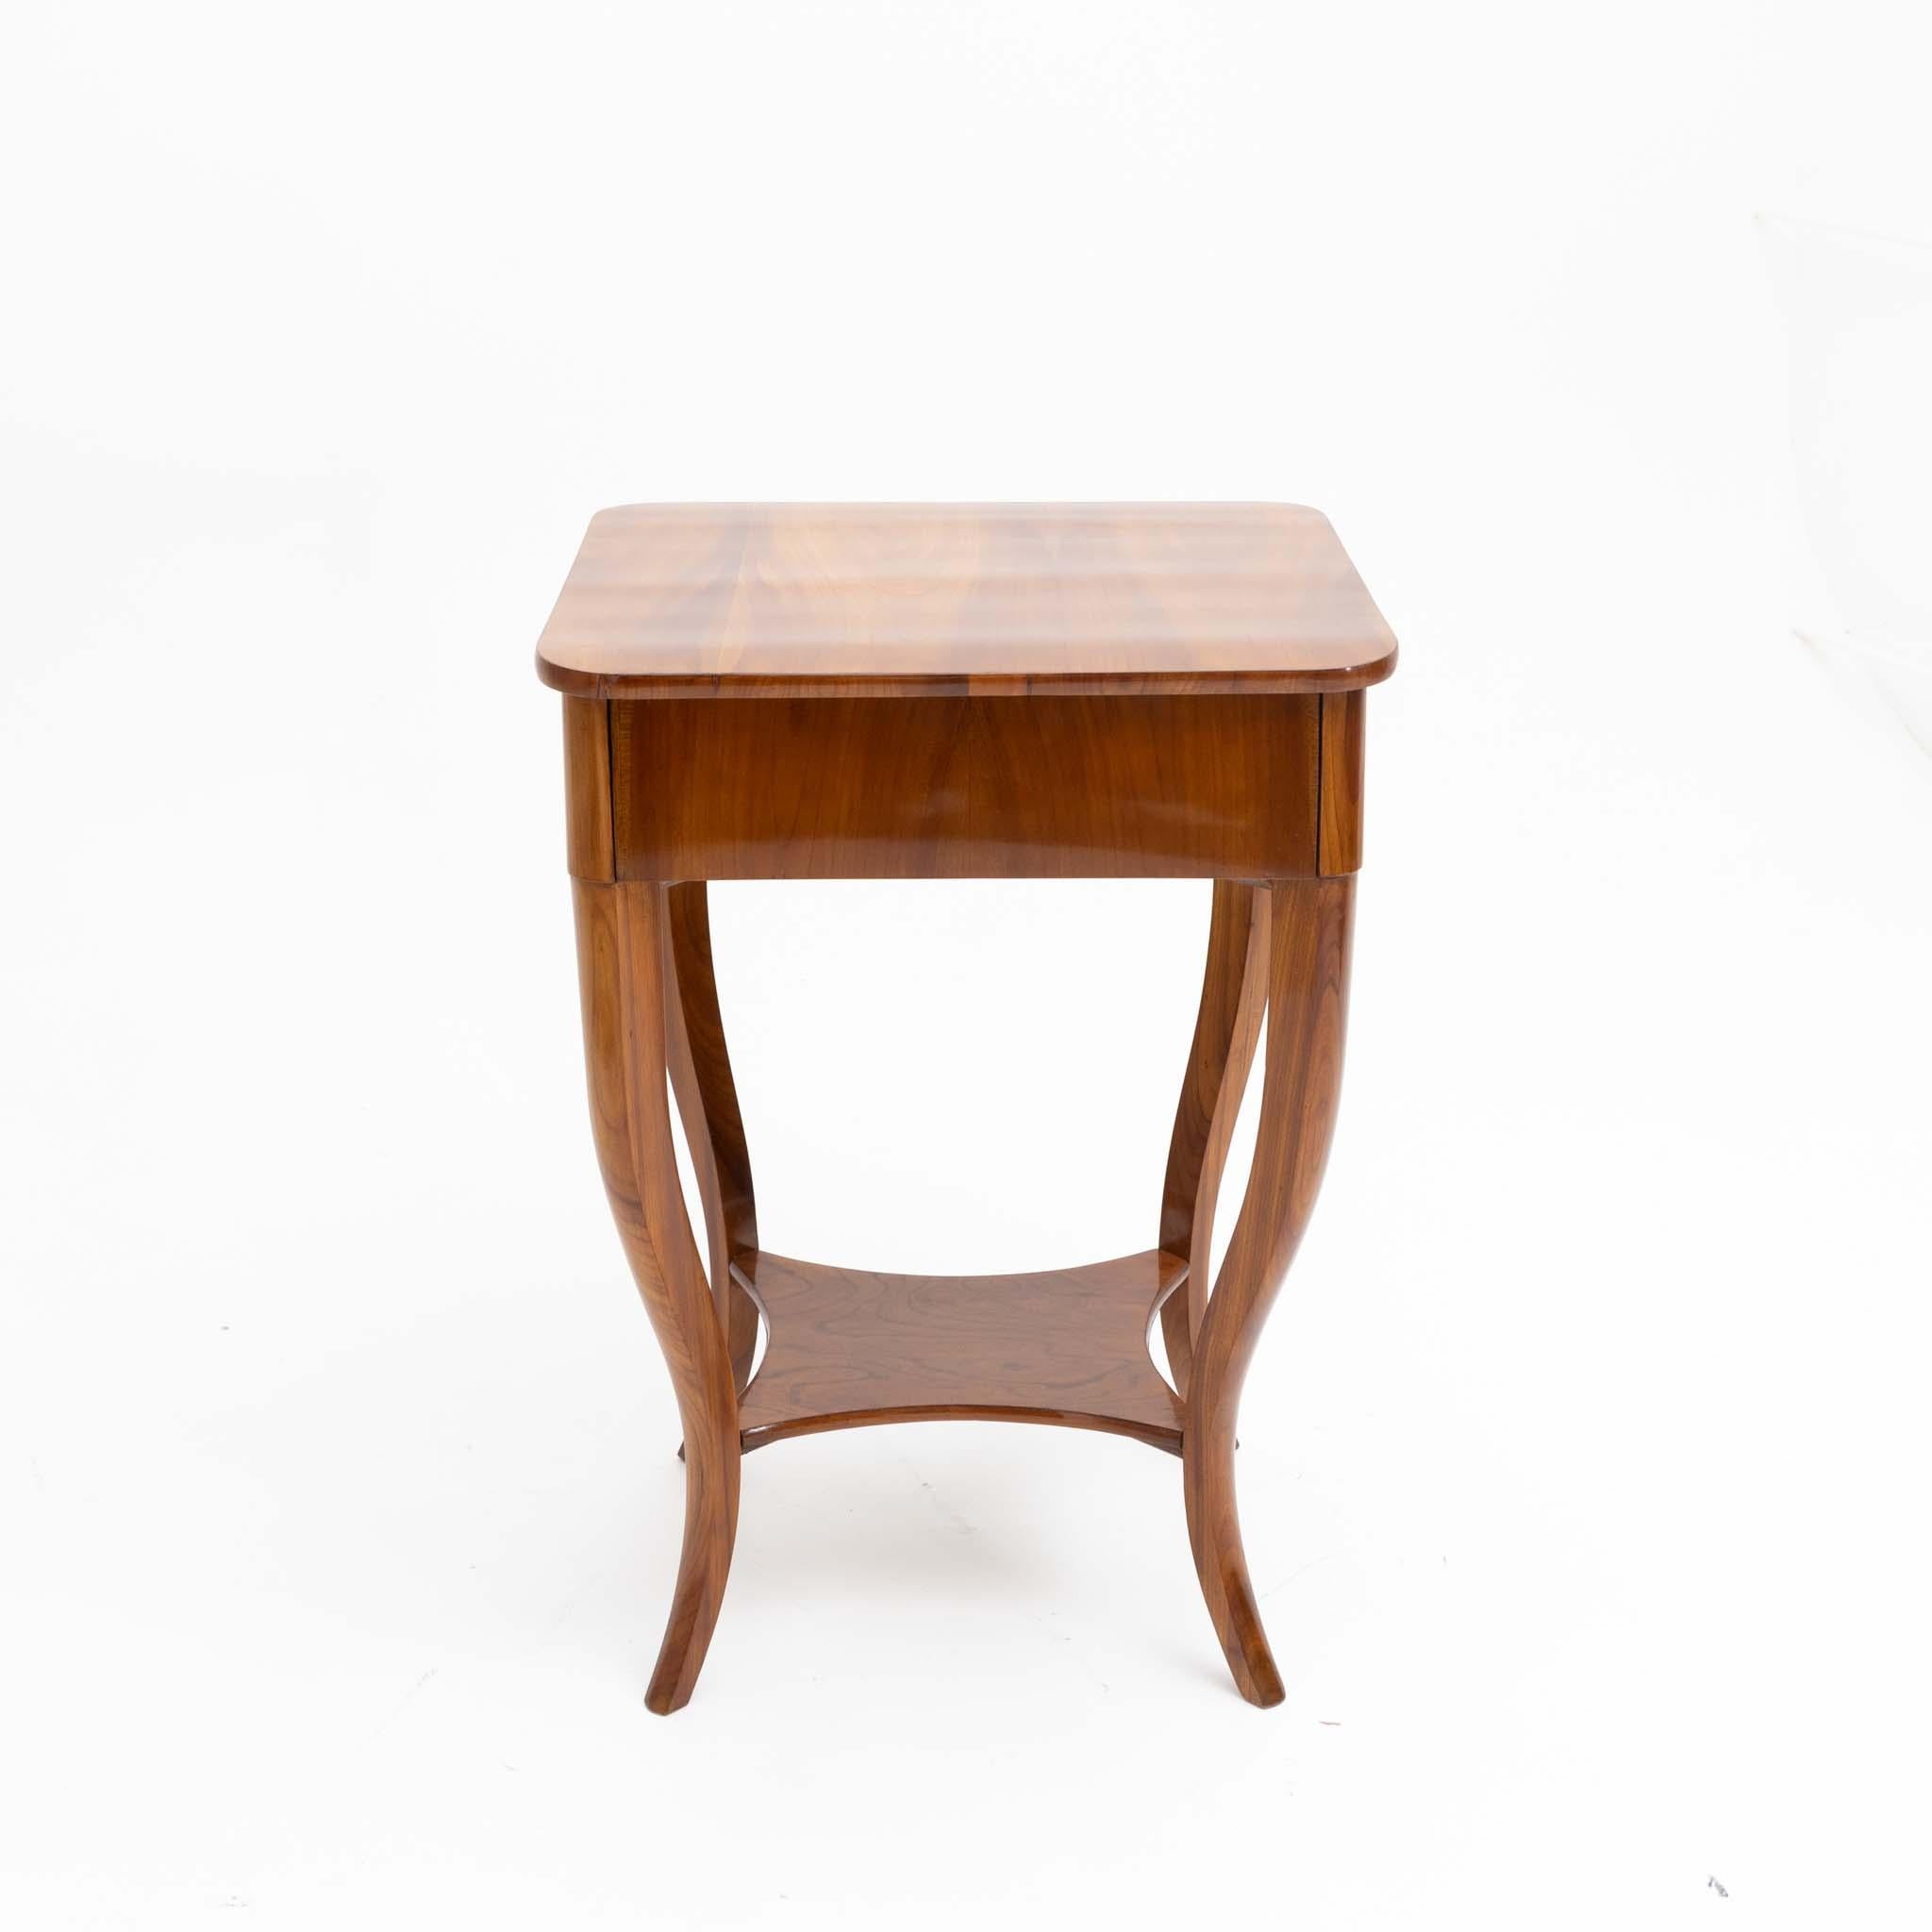 Wood Biedermeier Sewing Table, circa 1820